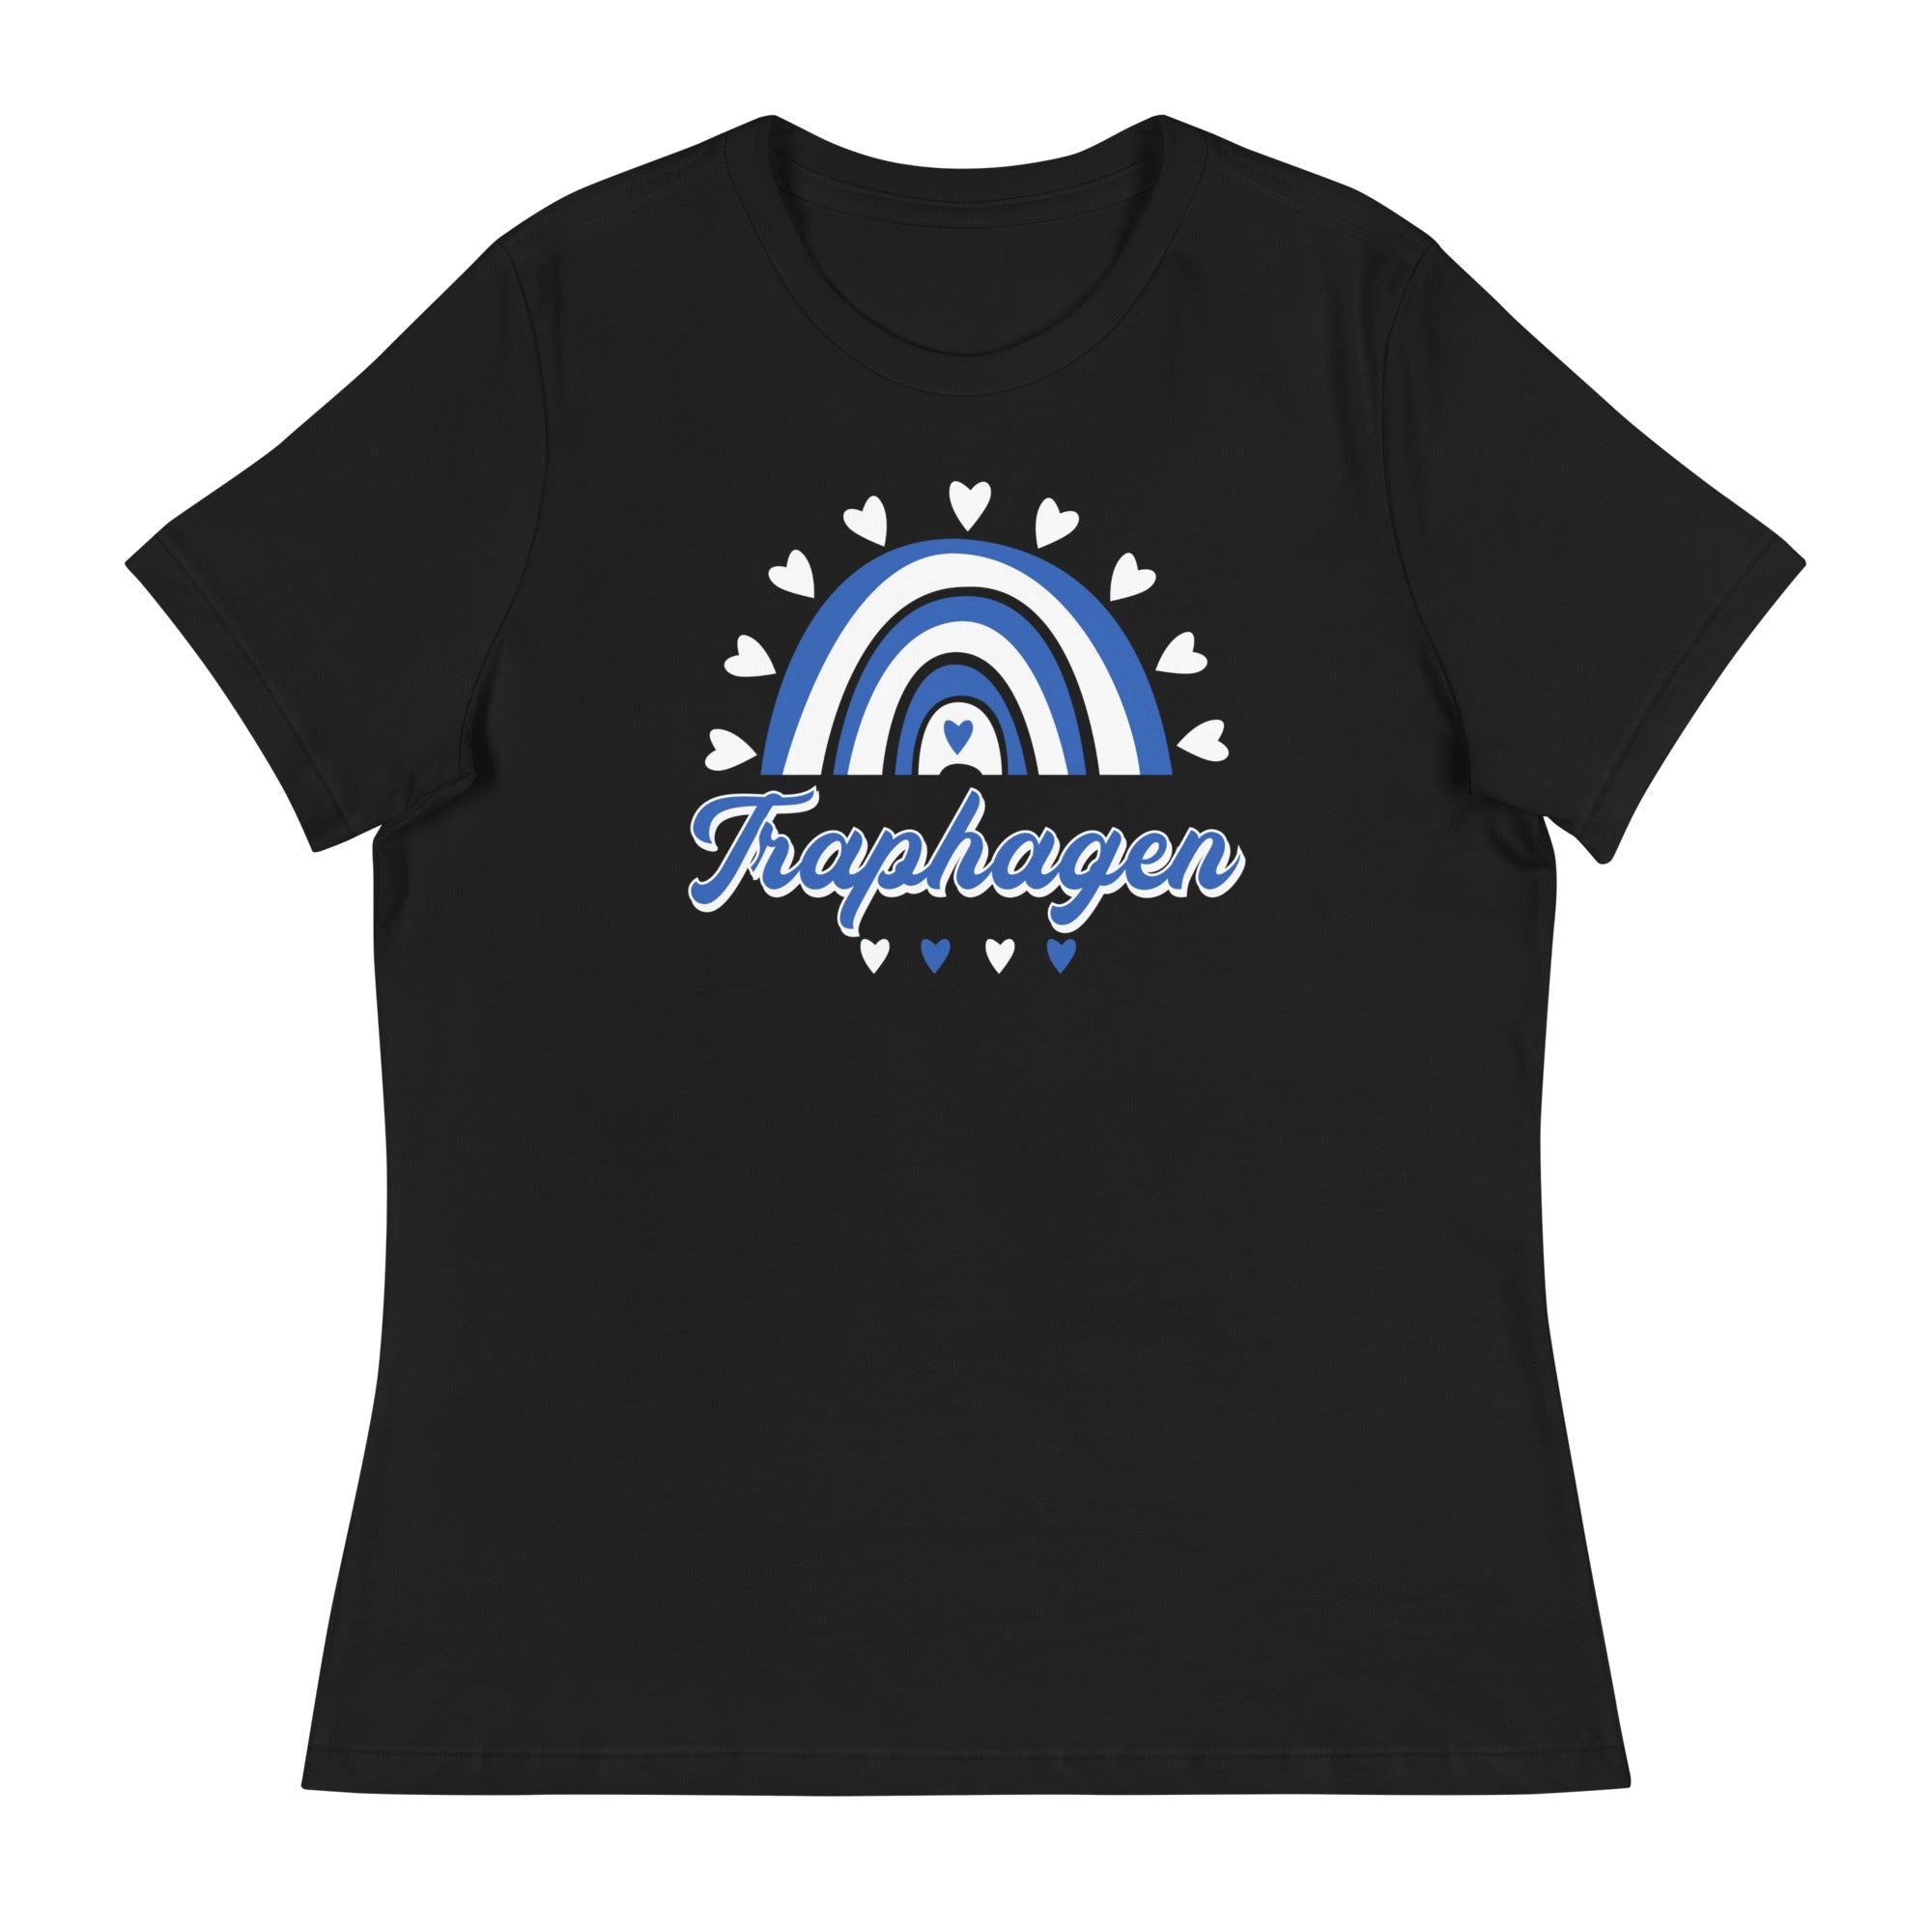 Traphagen Women's Relaxed T-Shirt V2